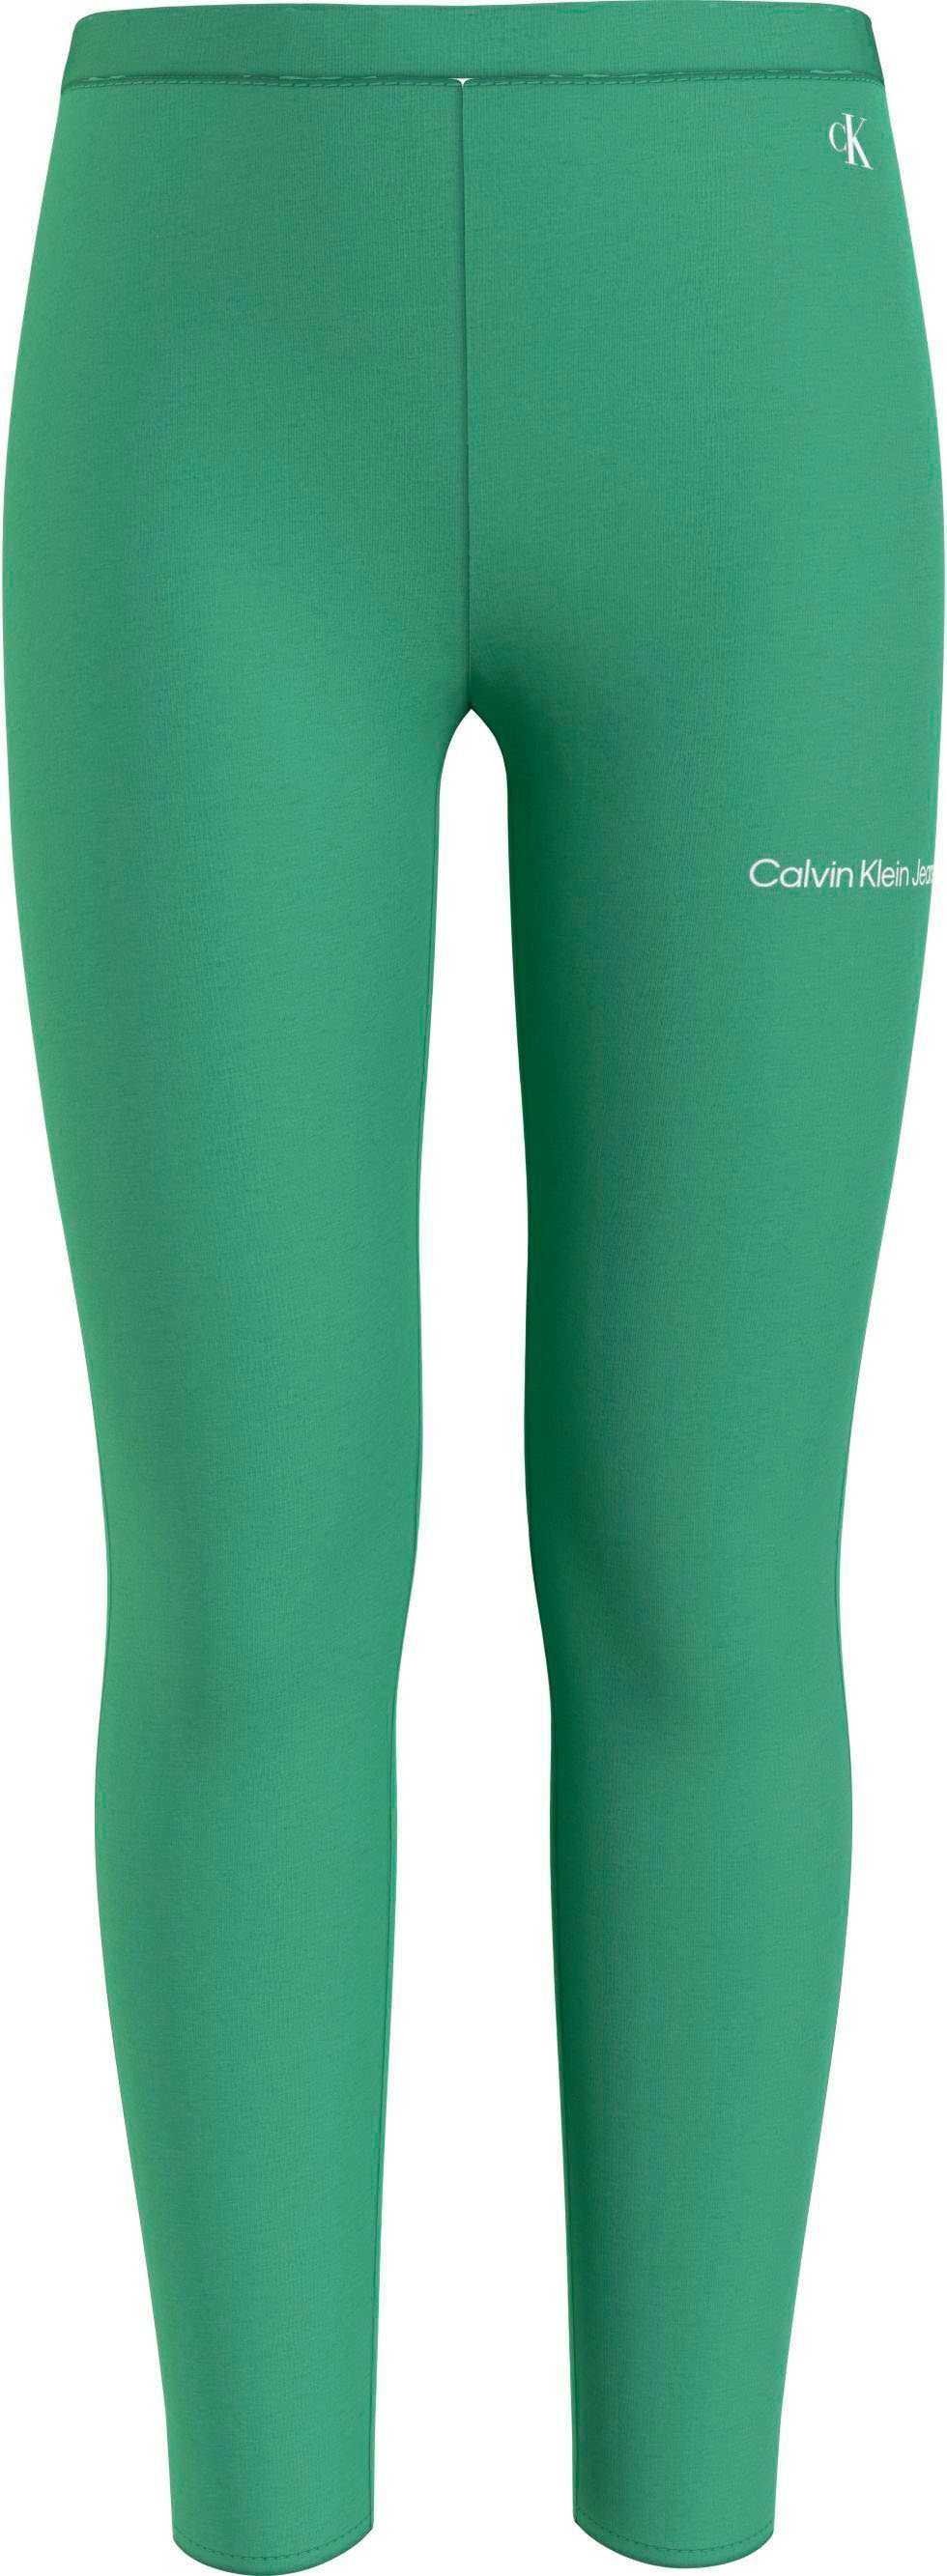 Calvin Klein Jeans Leggings Kinder Kids Junior MiniMe,mit Calvin Klein  Logoschriftzug auf dem Bein